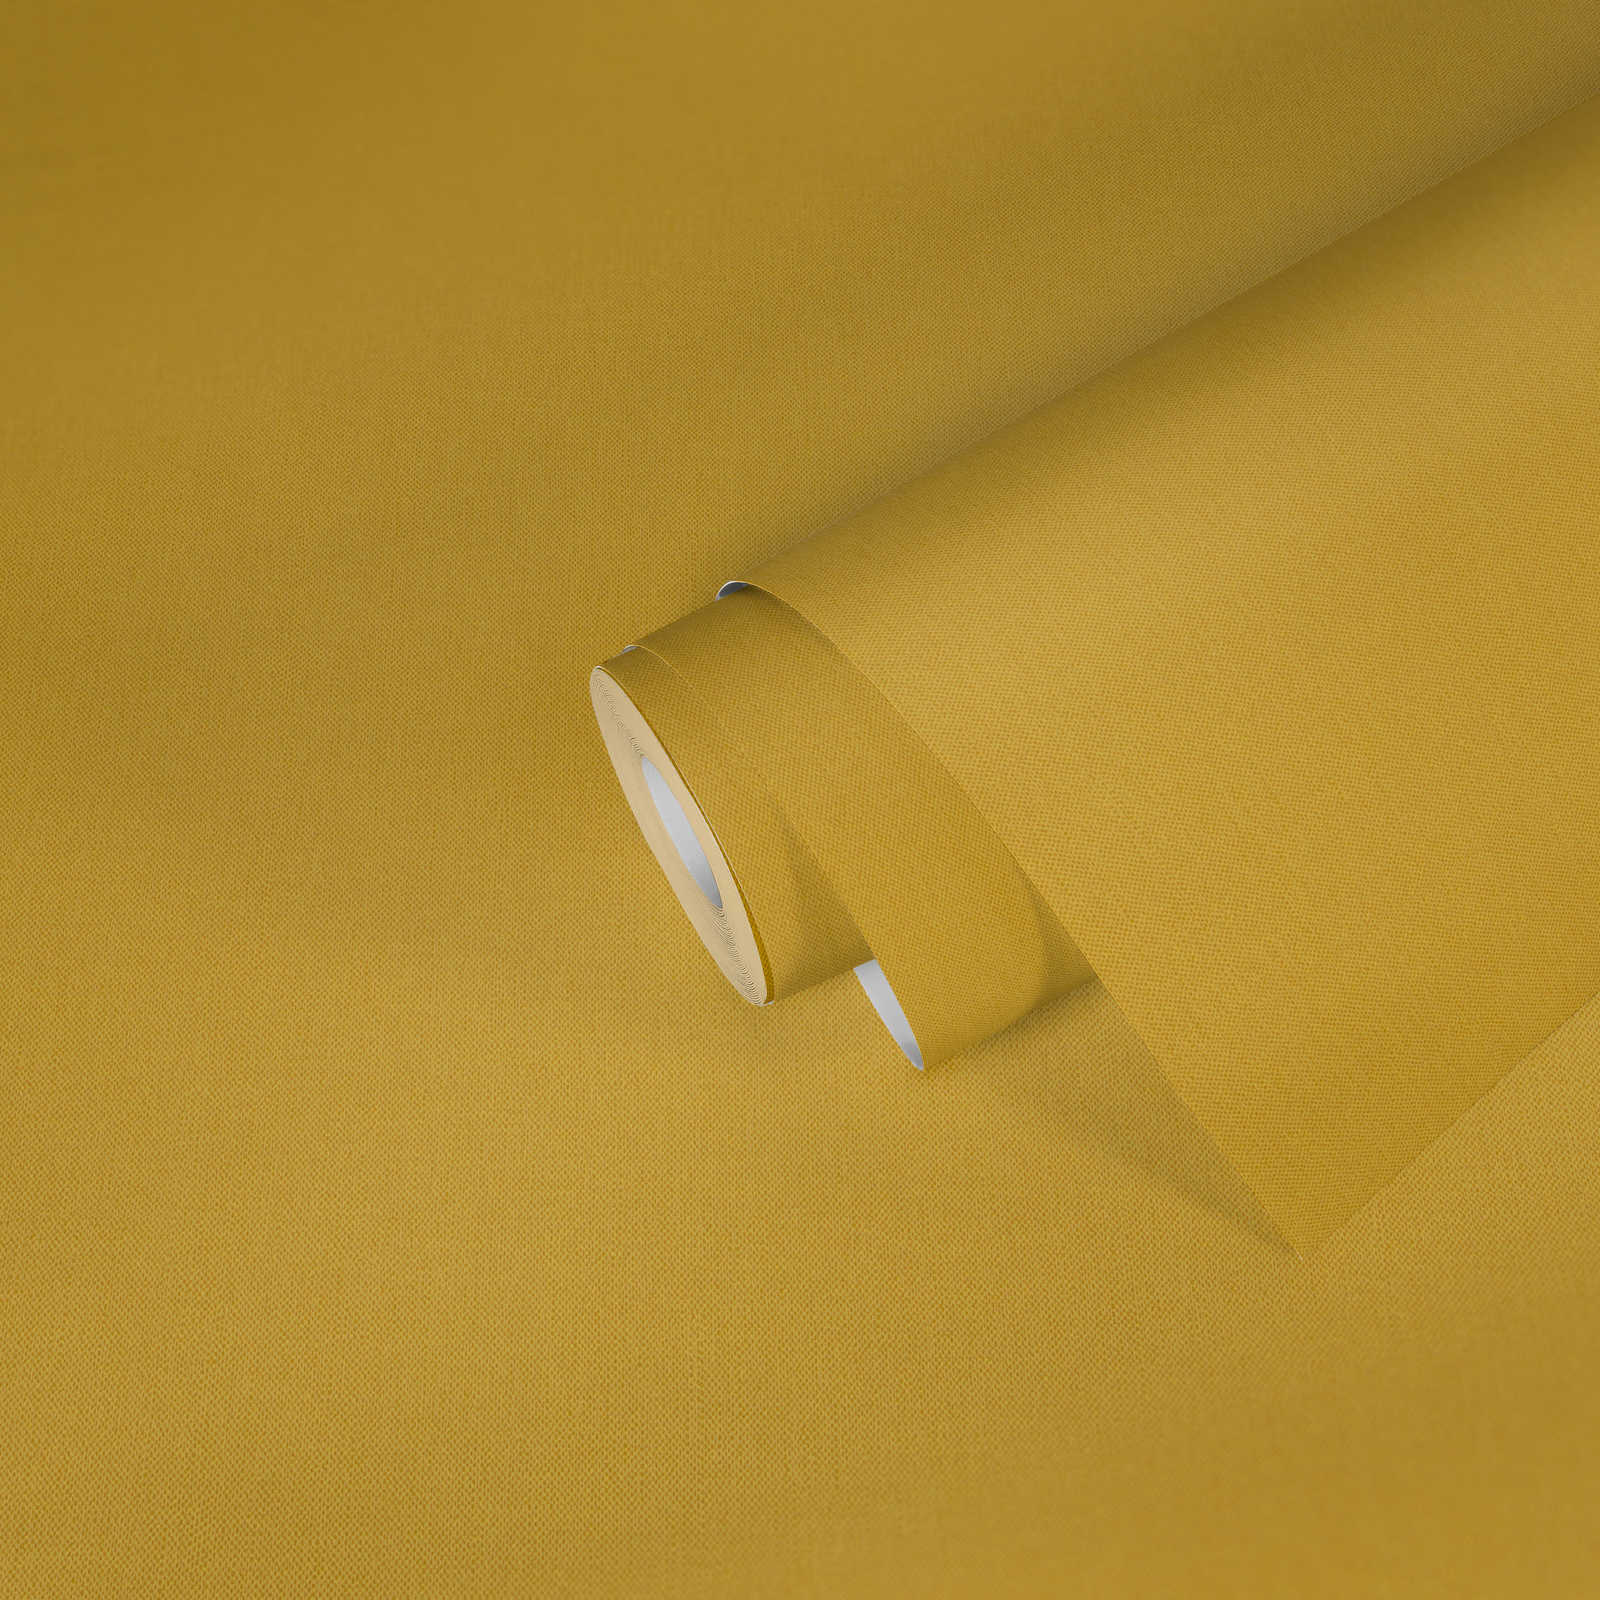             Carta da parati giallo senape uni con struttura tessile - giallo
        